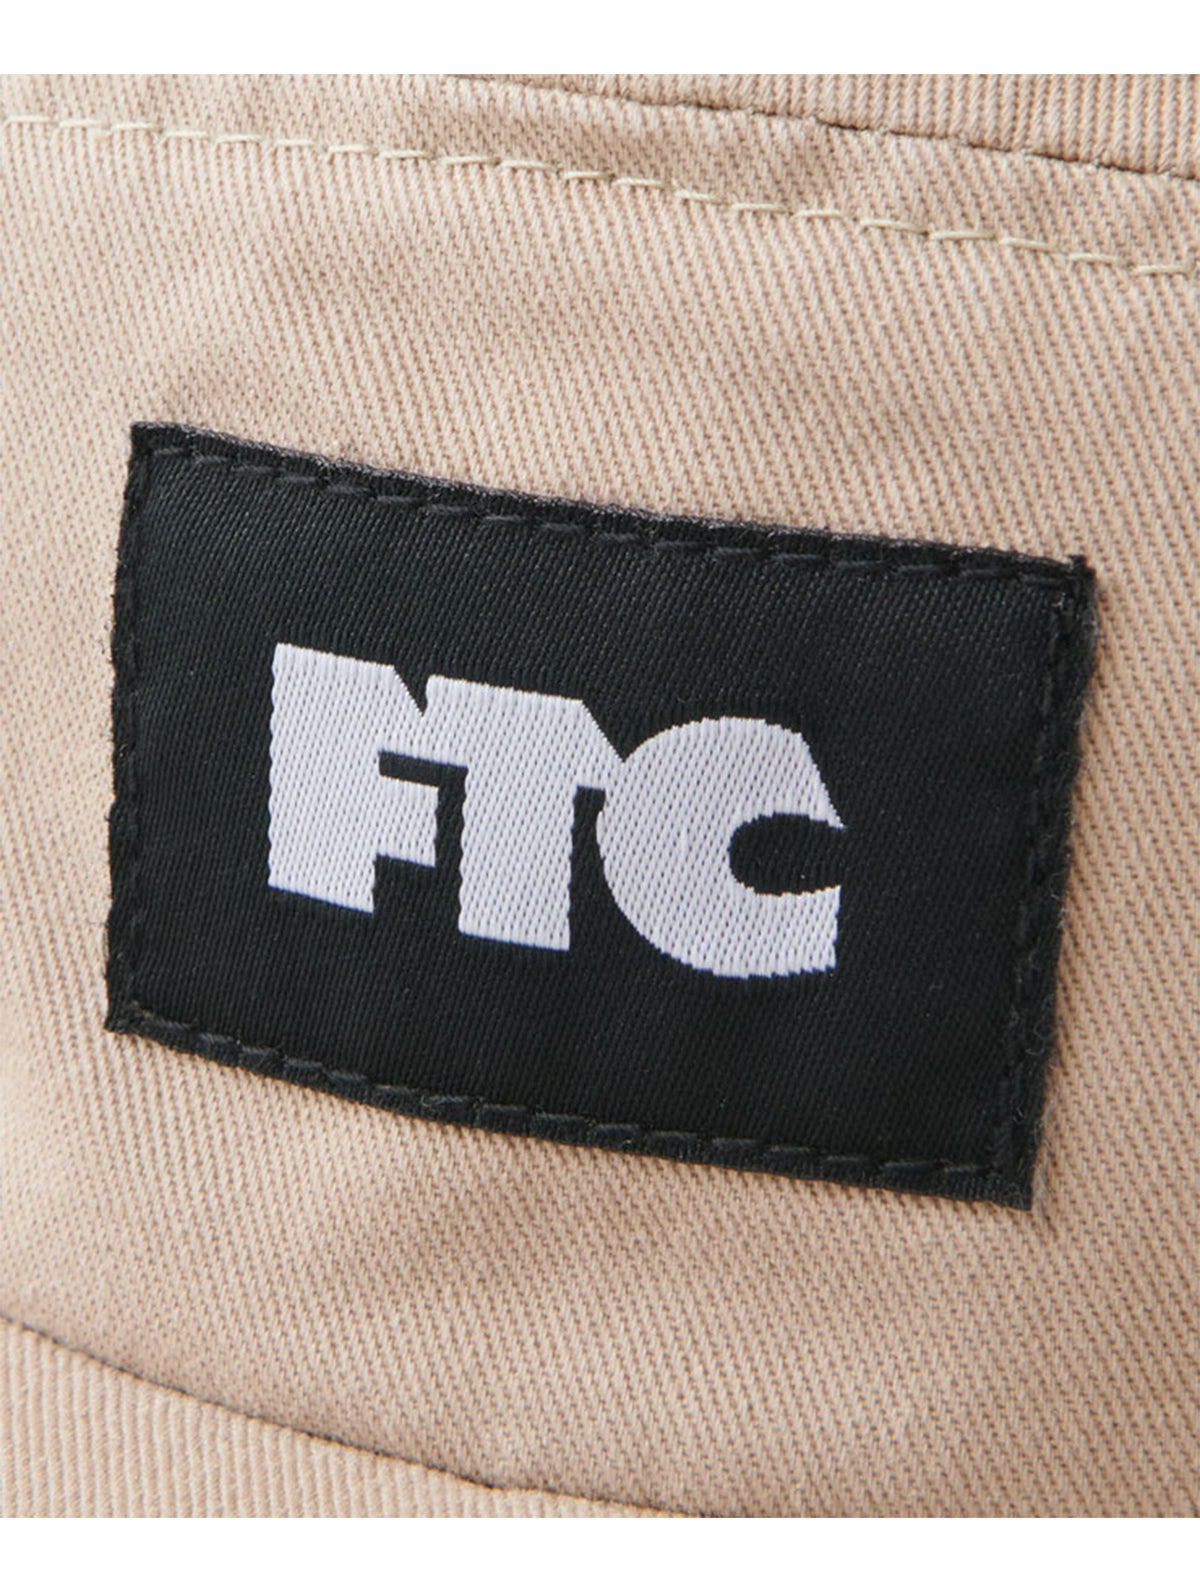 FTC BLEACH TWILL CAMP CAP